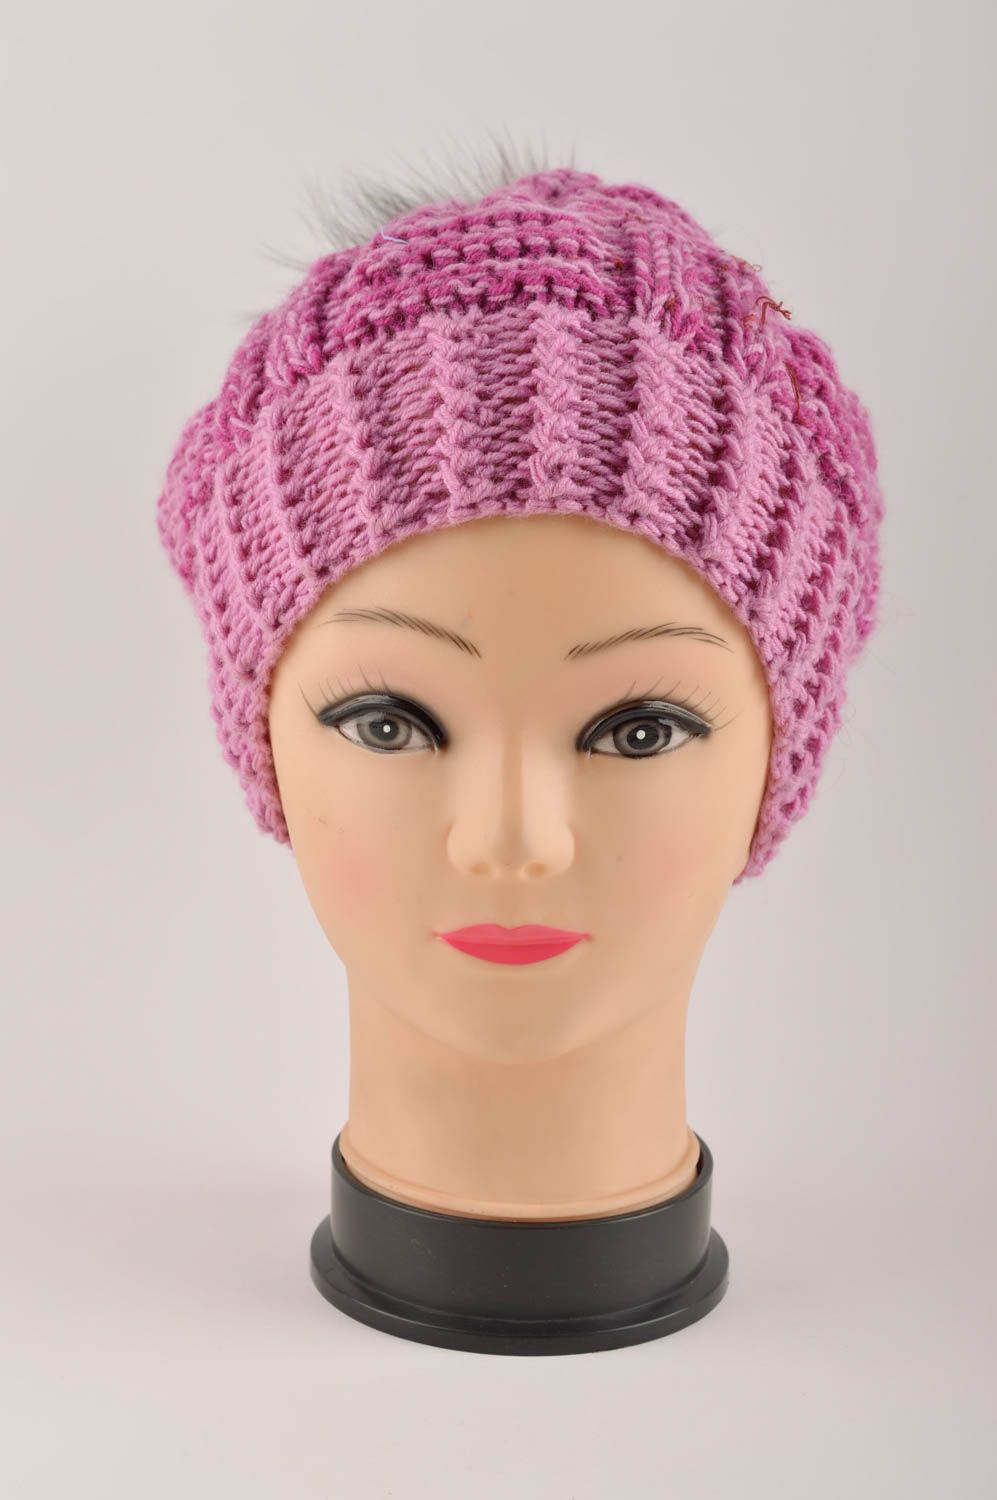 Зимняя шапка головной убор ручной работы шапка с мехом вязаная шапка розовая фото 3